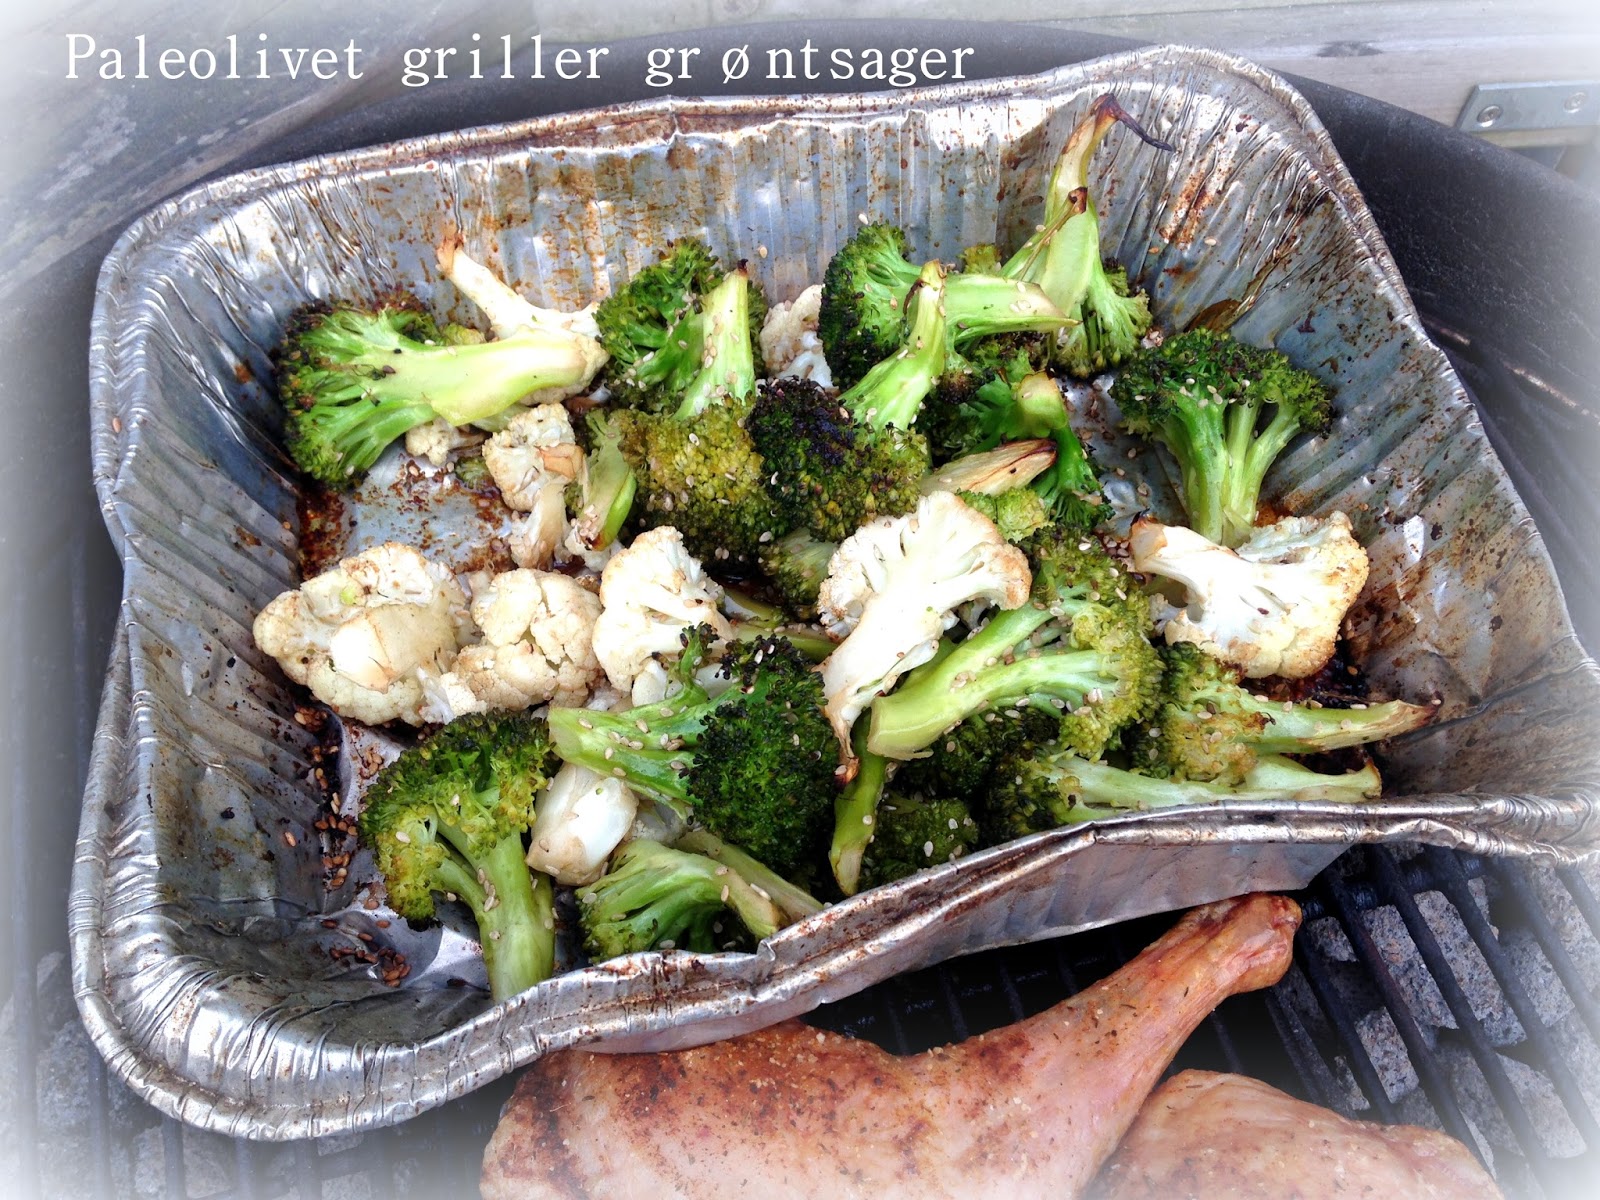 Paleolivet: Grillet broccoli og blomkål - grillede grøntsager